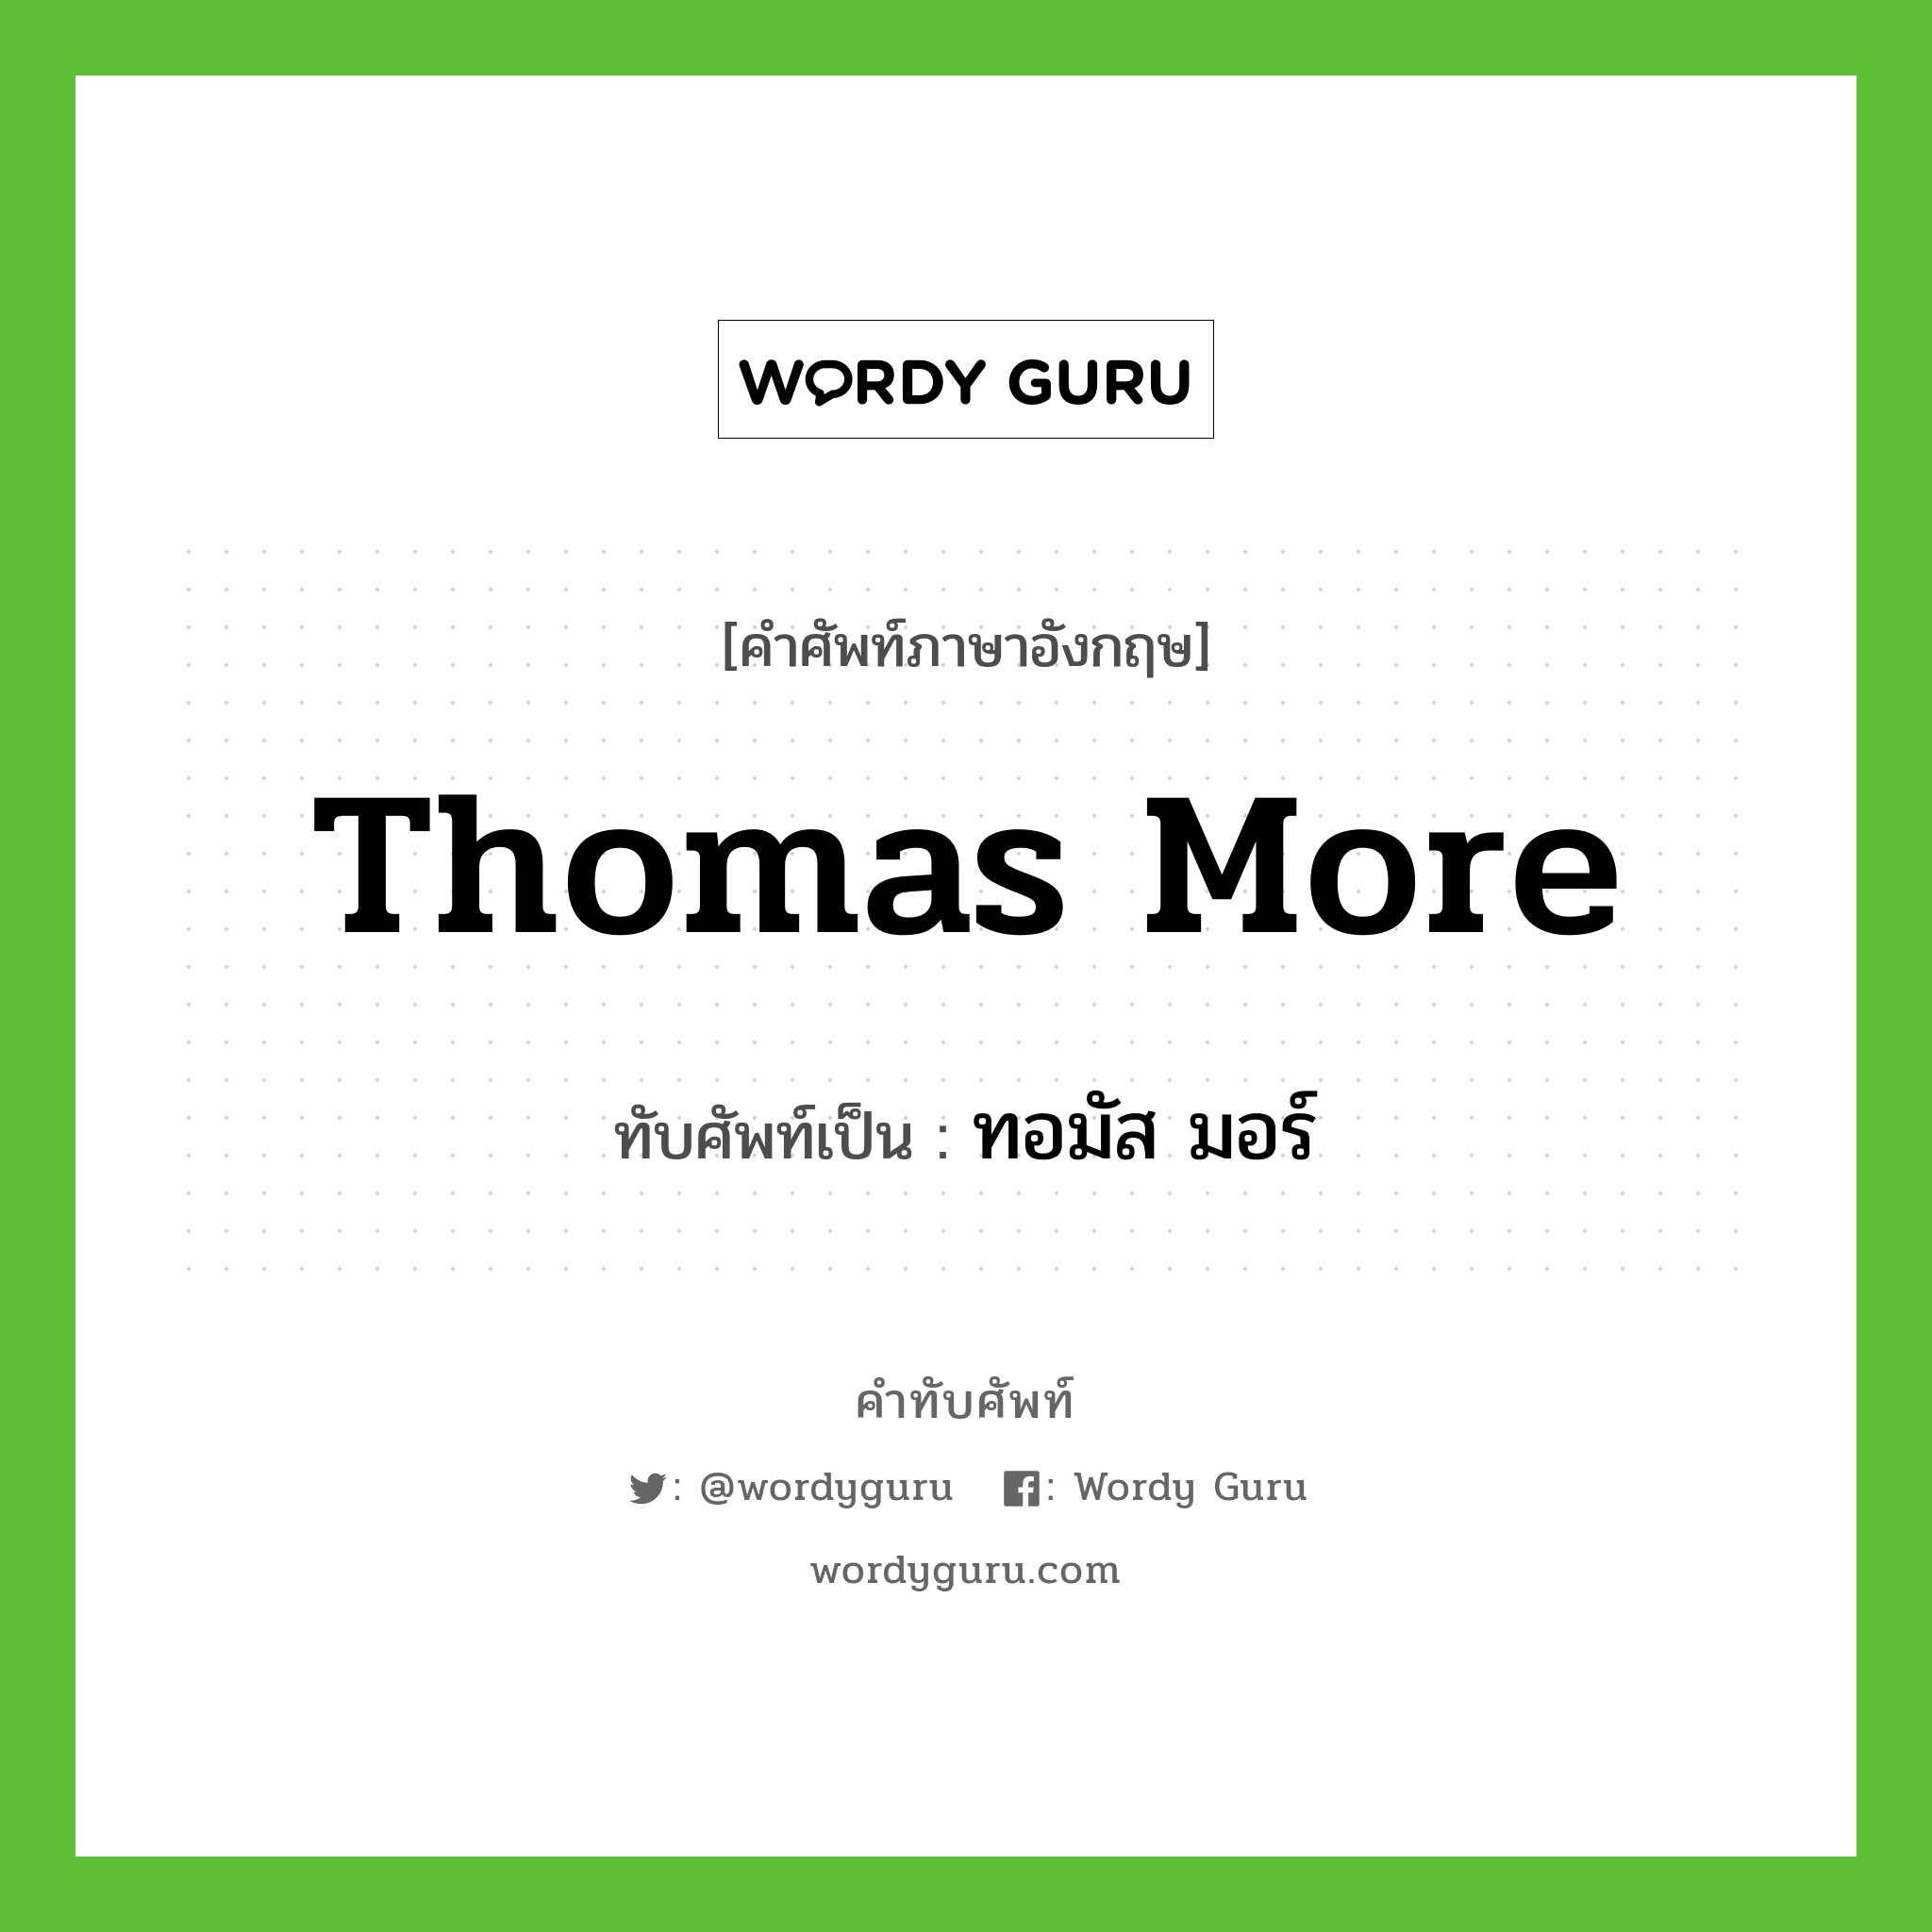 Thomas More เขียนเป็นคำไทยว่าอะไร?, คำศัพท์ภาษาอังกฤษ Thomas More ทับศัพท์เป็น ทอมัส มอร์